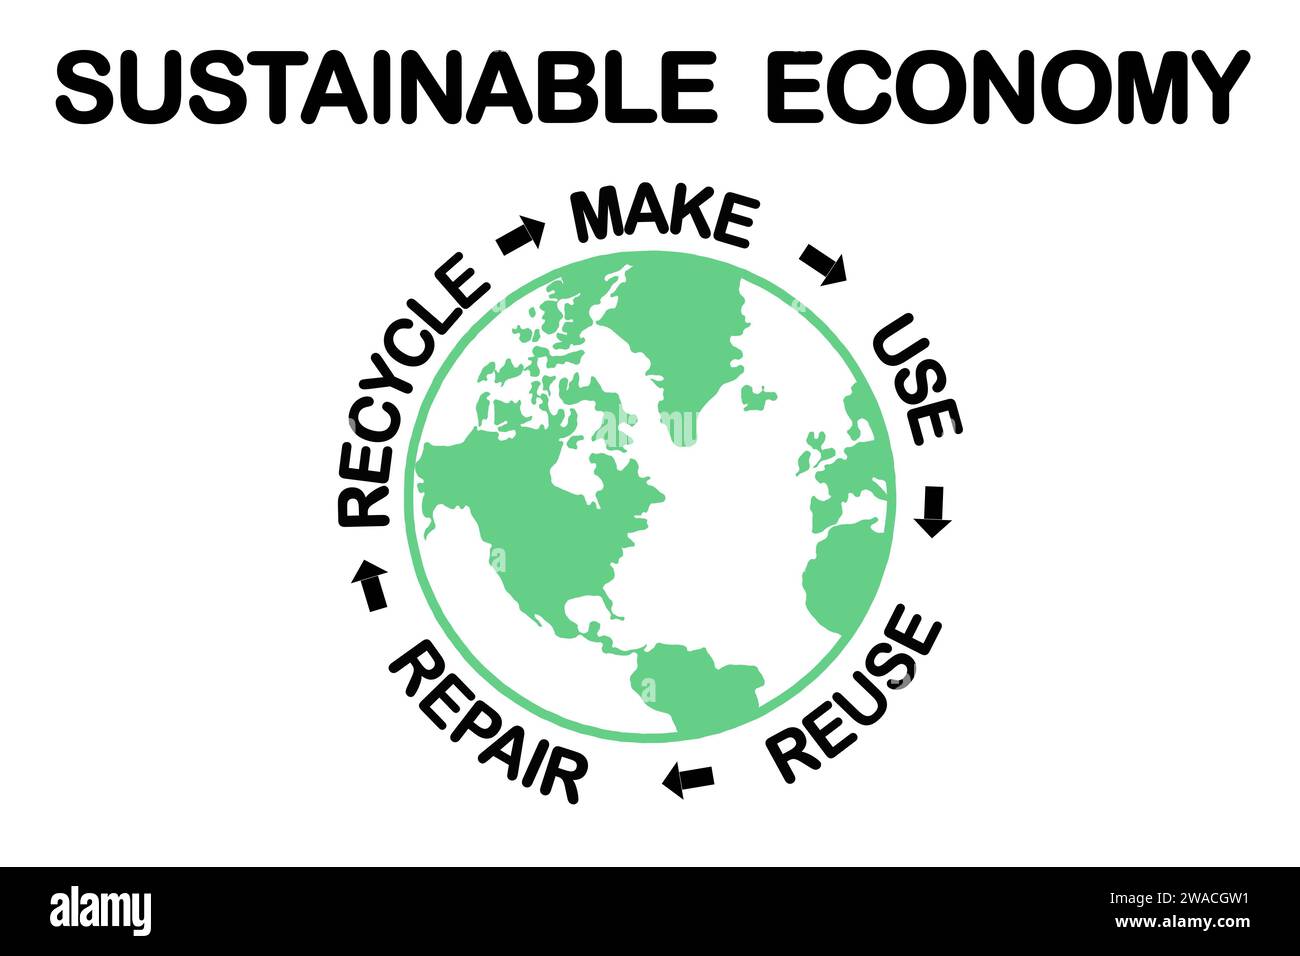 Diagramm zur nachhaltigen Kreislaufwirtschaft, Herstellung, Verwendung, Wiederverwendung, Reparatur, Recycling von Ressourcen für nachhaltigen Verbrauch, umweltfreundliches Konzept ohne Abfall Stockfoto